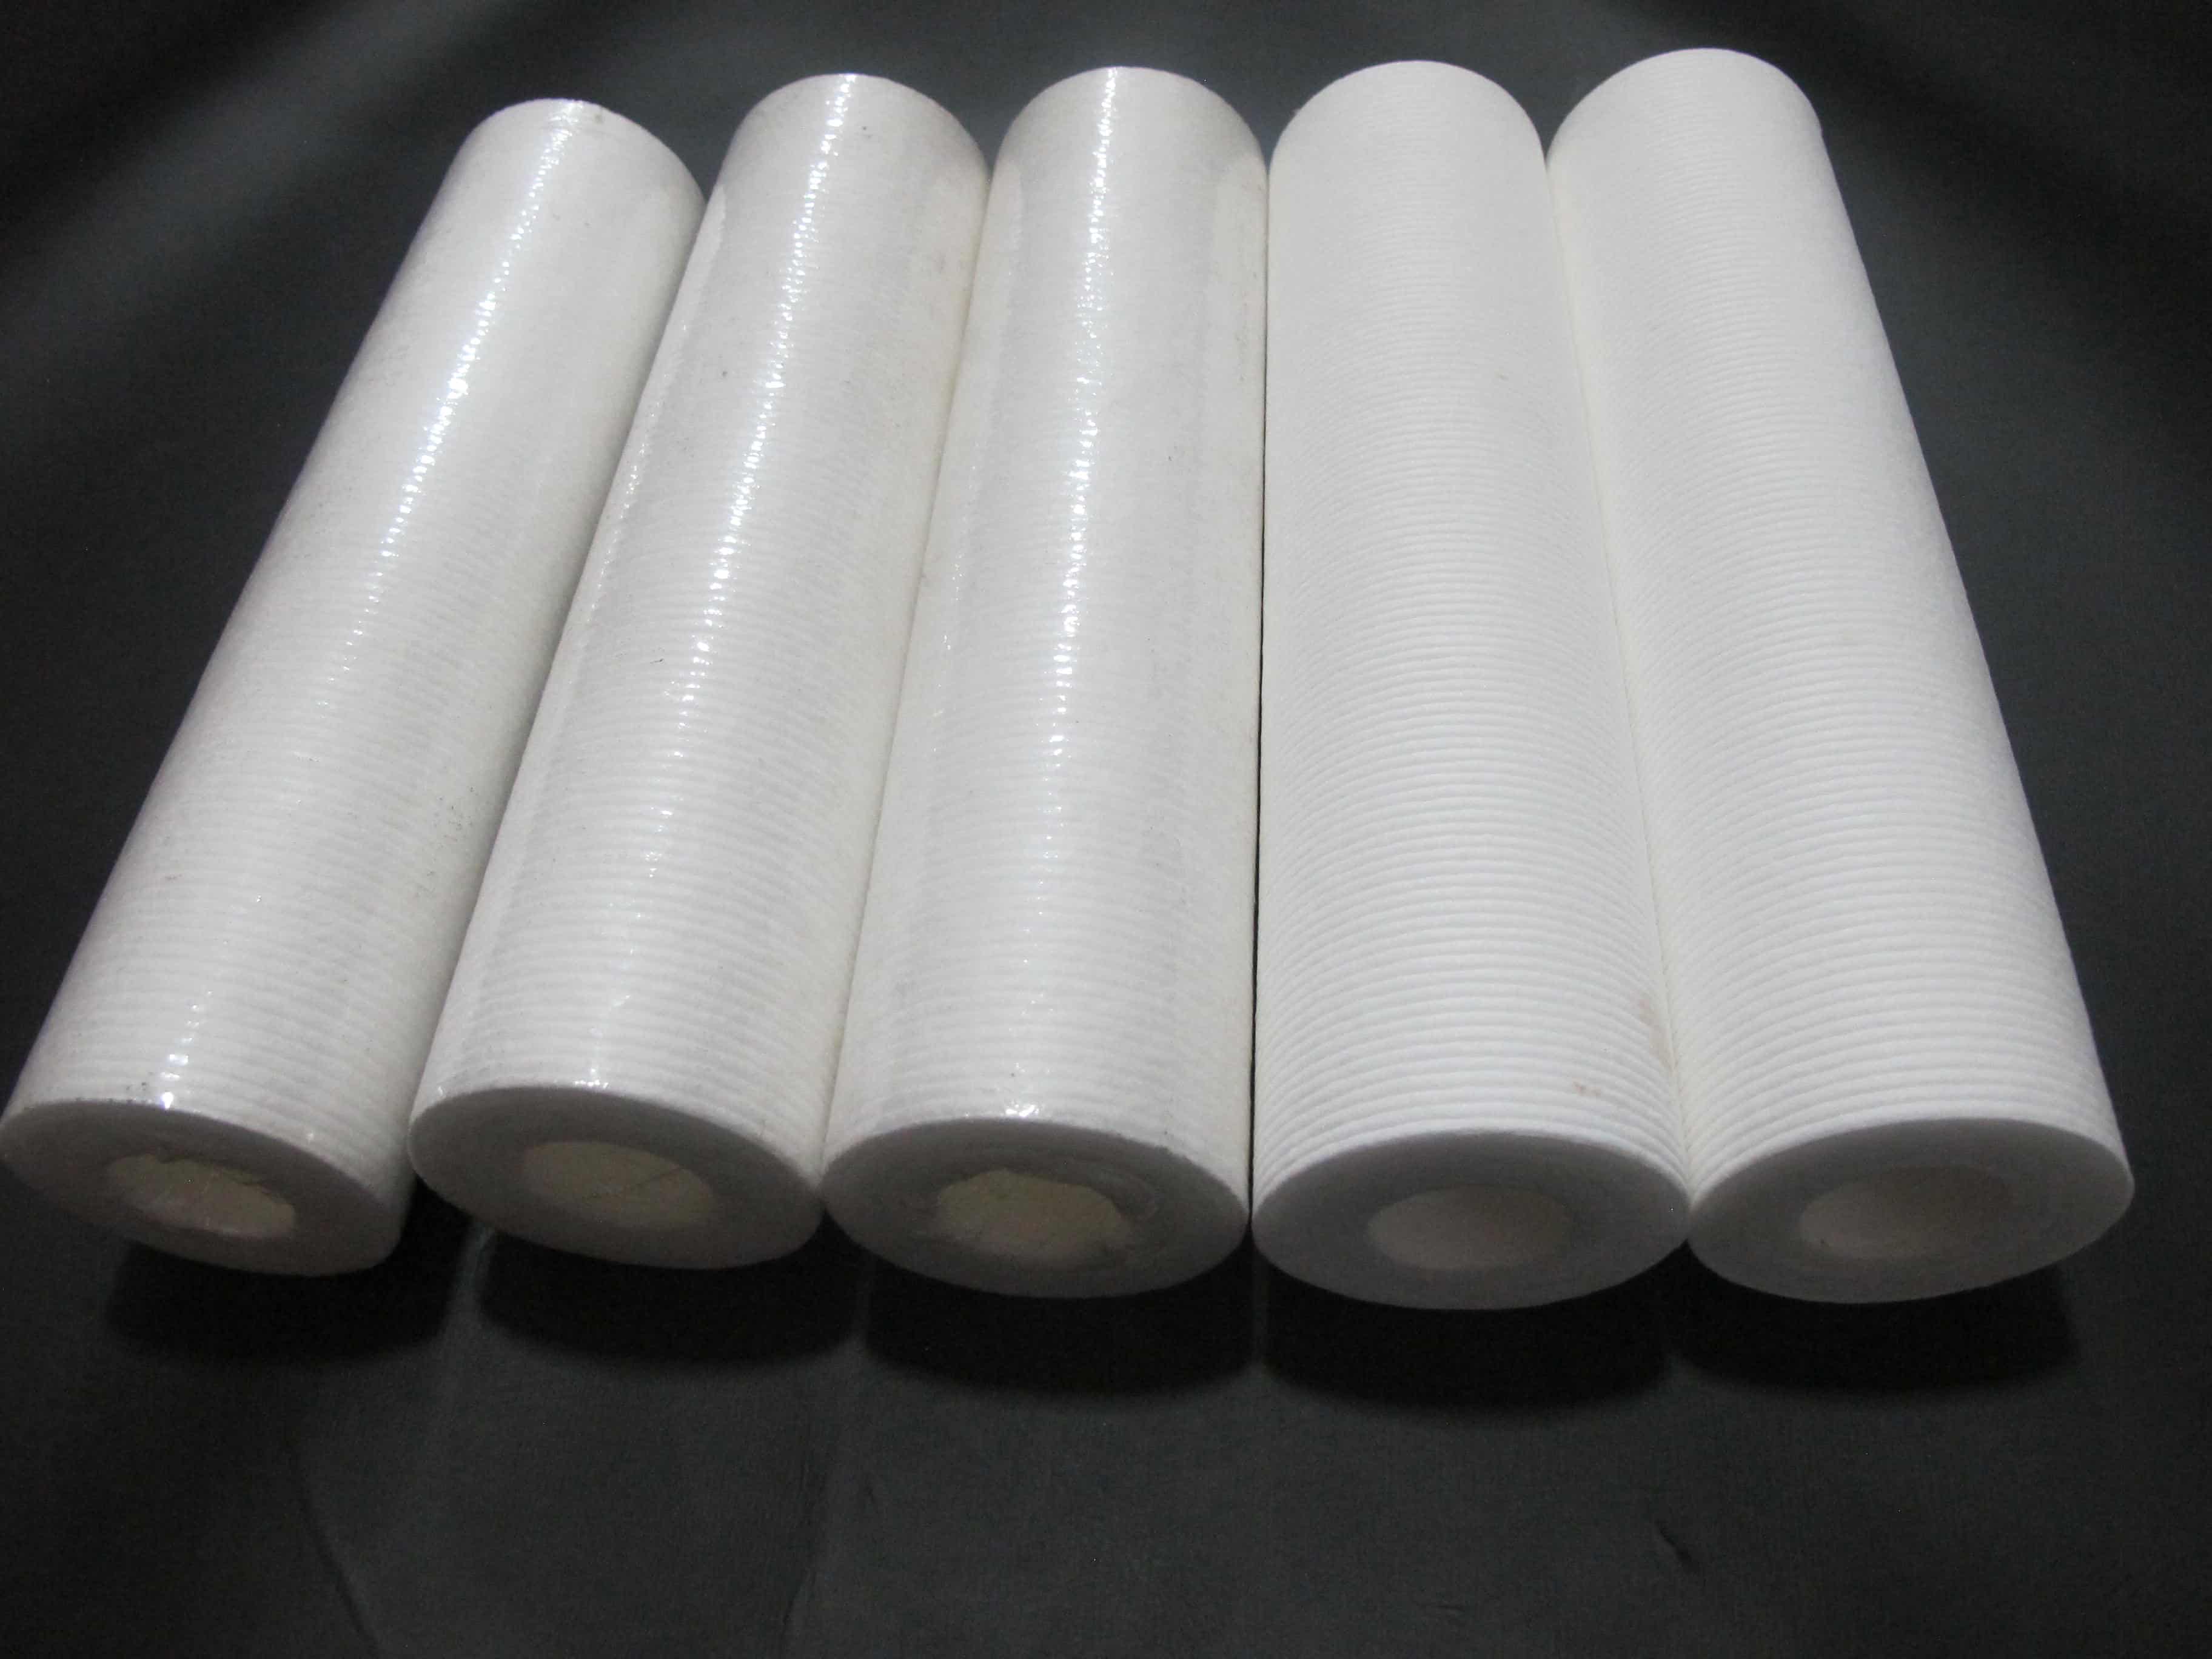 Lõi lọc PE (Polyethylene) là sản phẩm được dùng thay thế lõi ceramic bằng đá vôi.